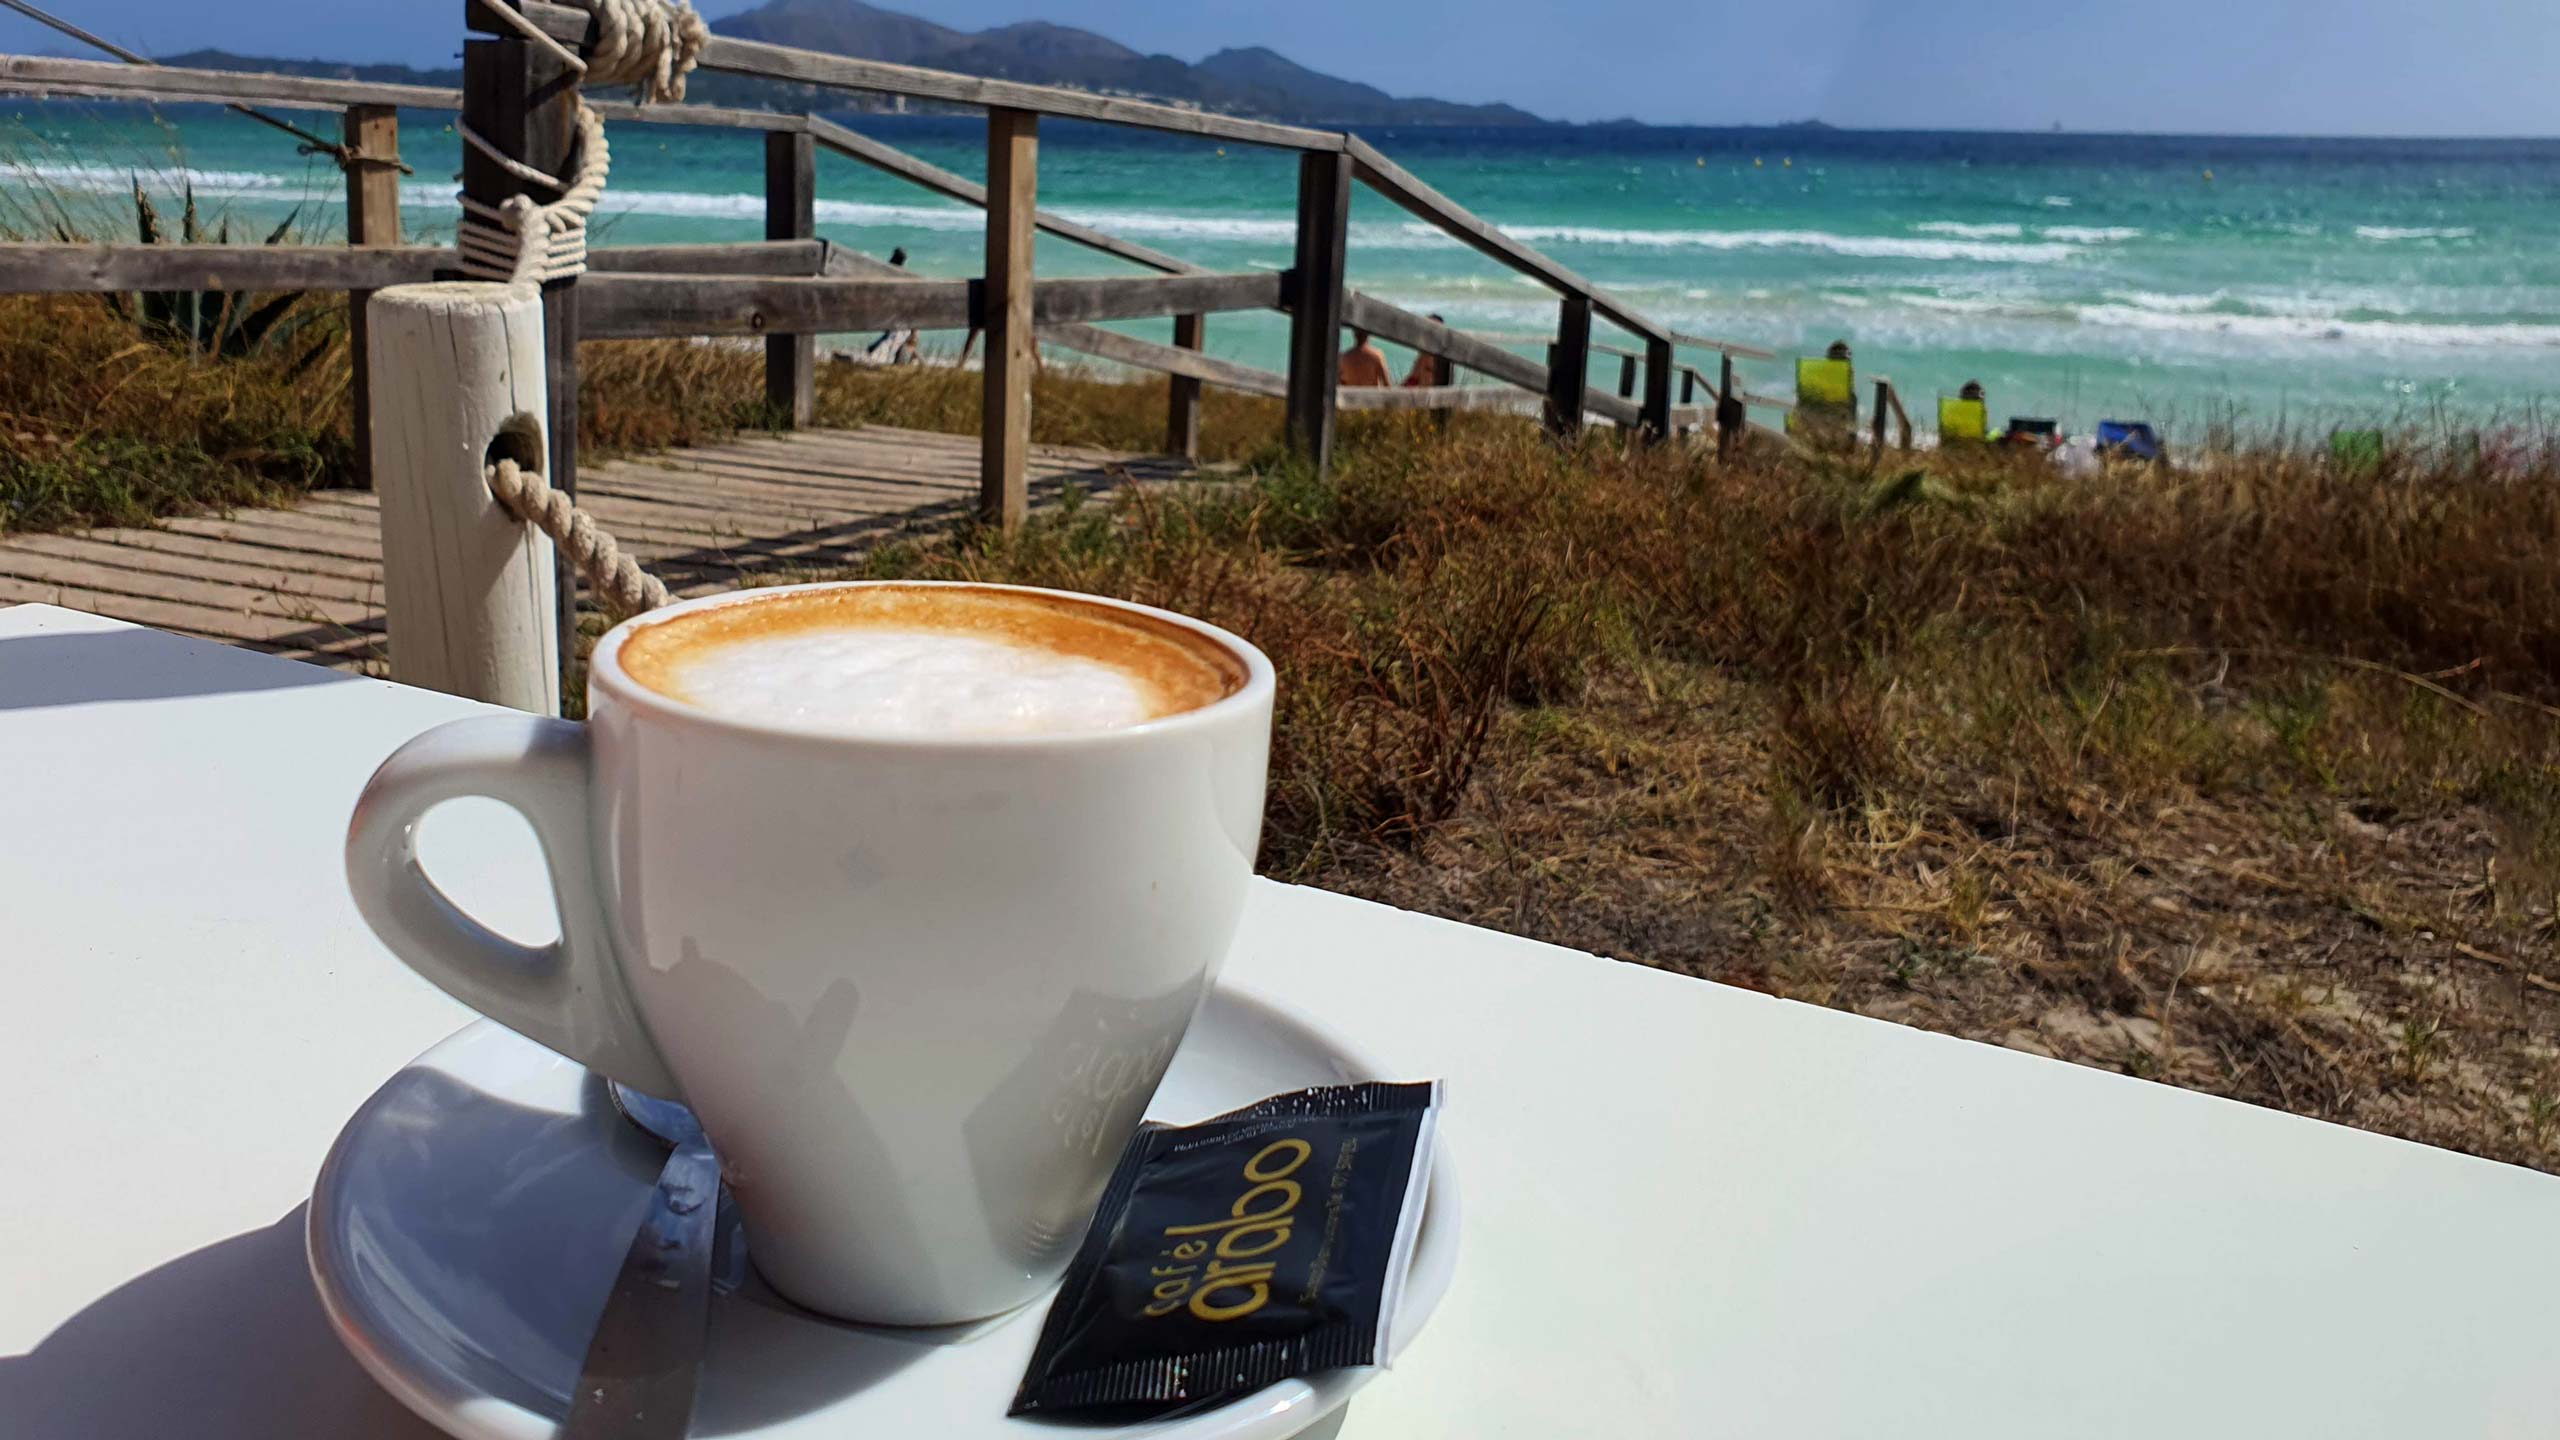 Auf Mallorca am Strand schmeckt der Kaffee einfach am besten. Hier eine kleine spanische Kaffeekunde mit den bekanntesten Kaffeespezialitäten.